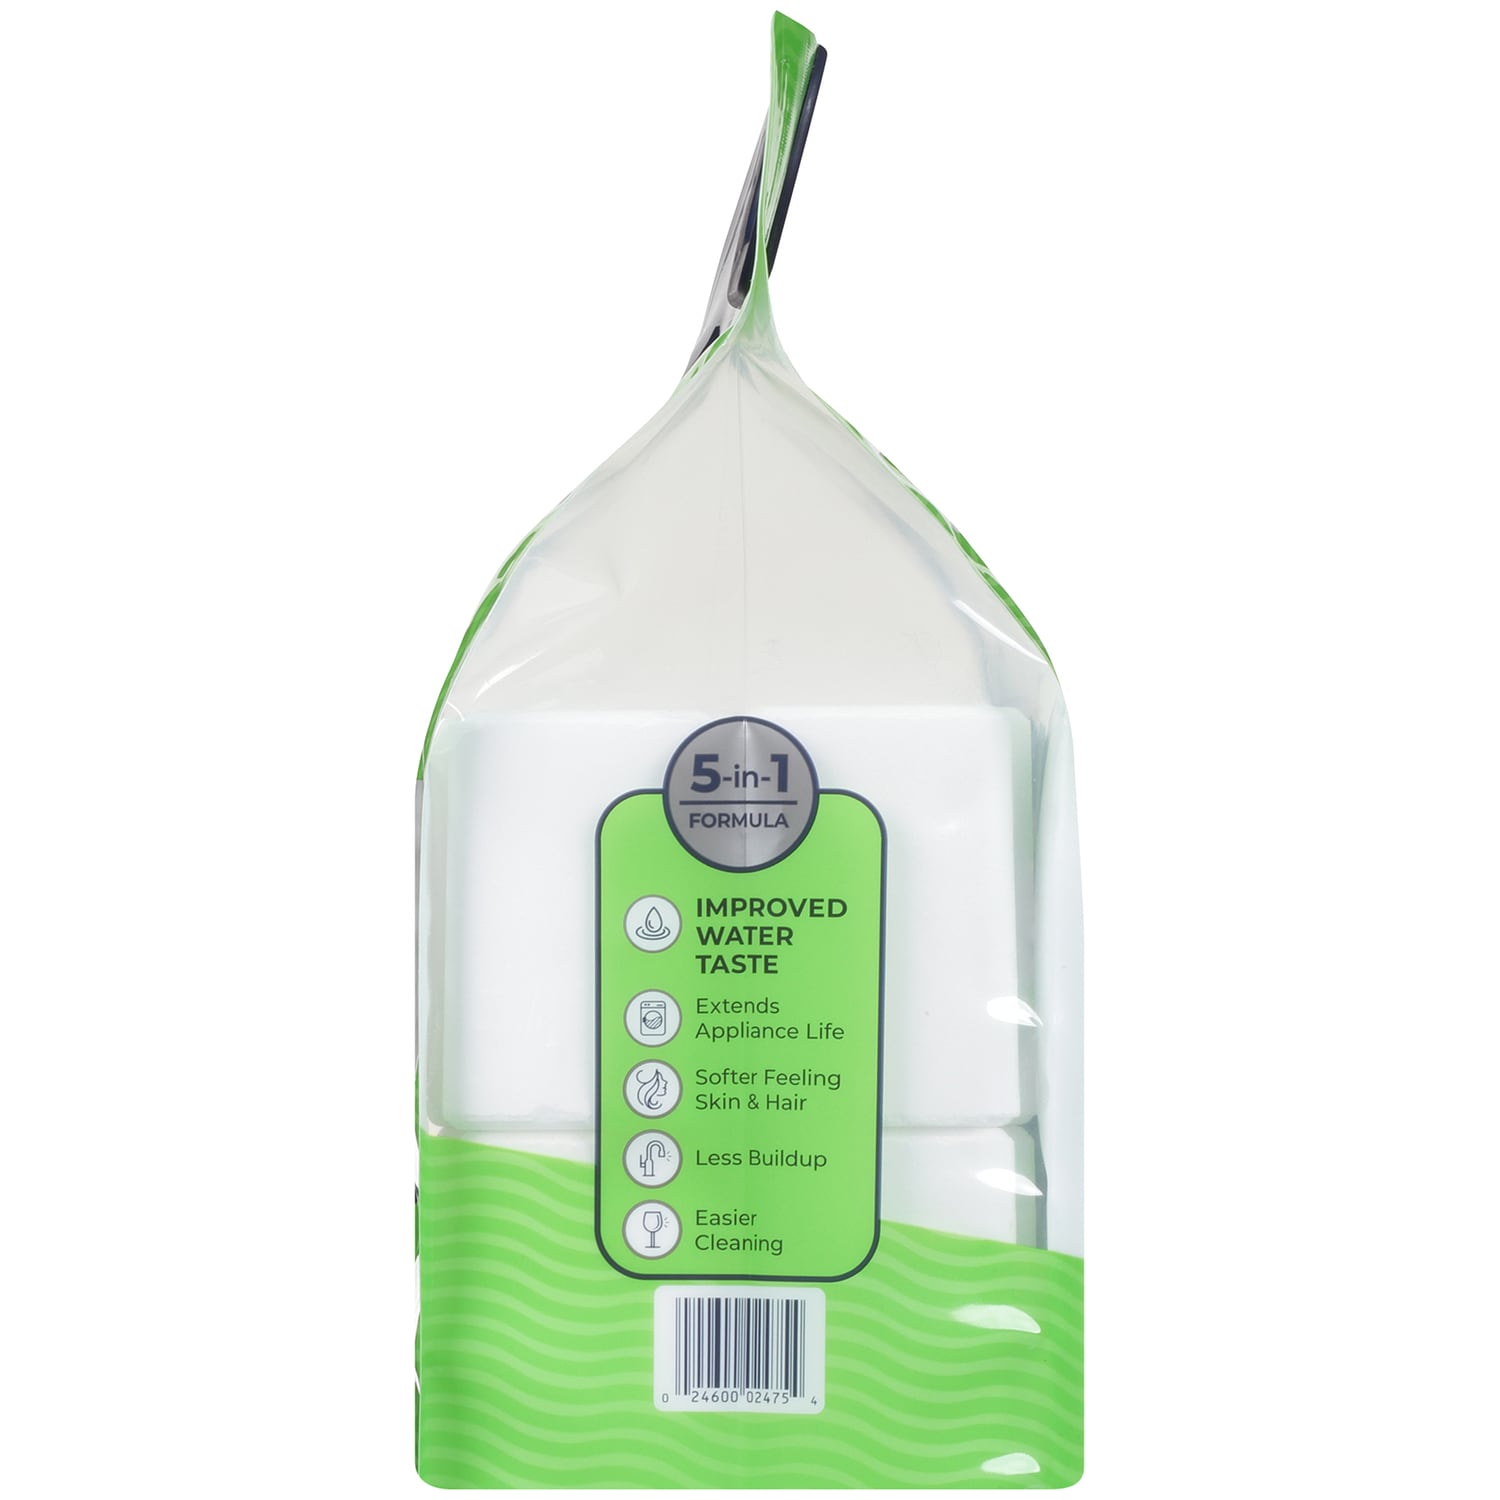 Morton® Water Softener Cleanser – Morton